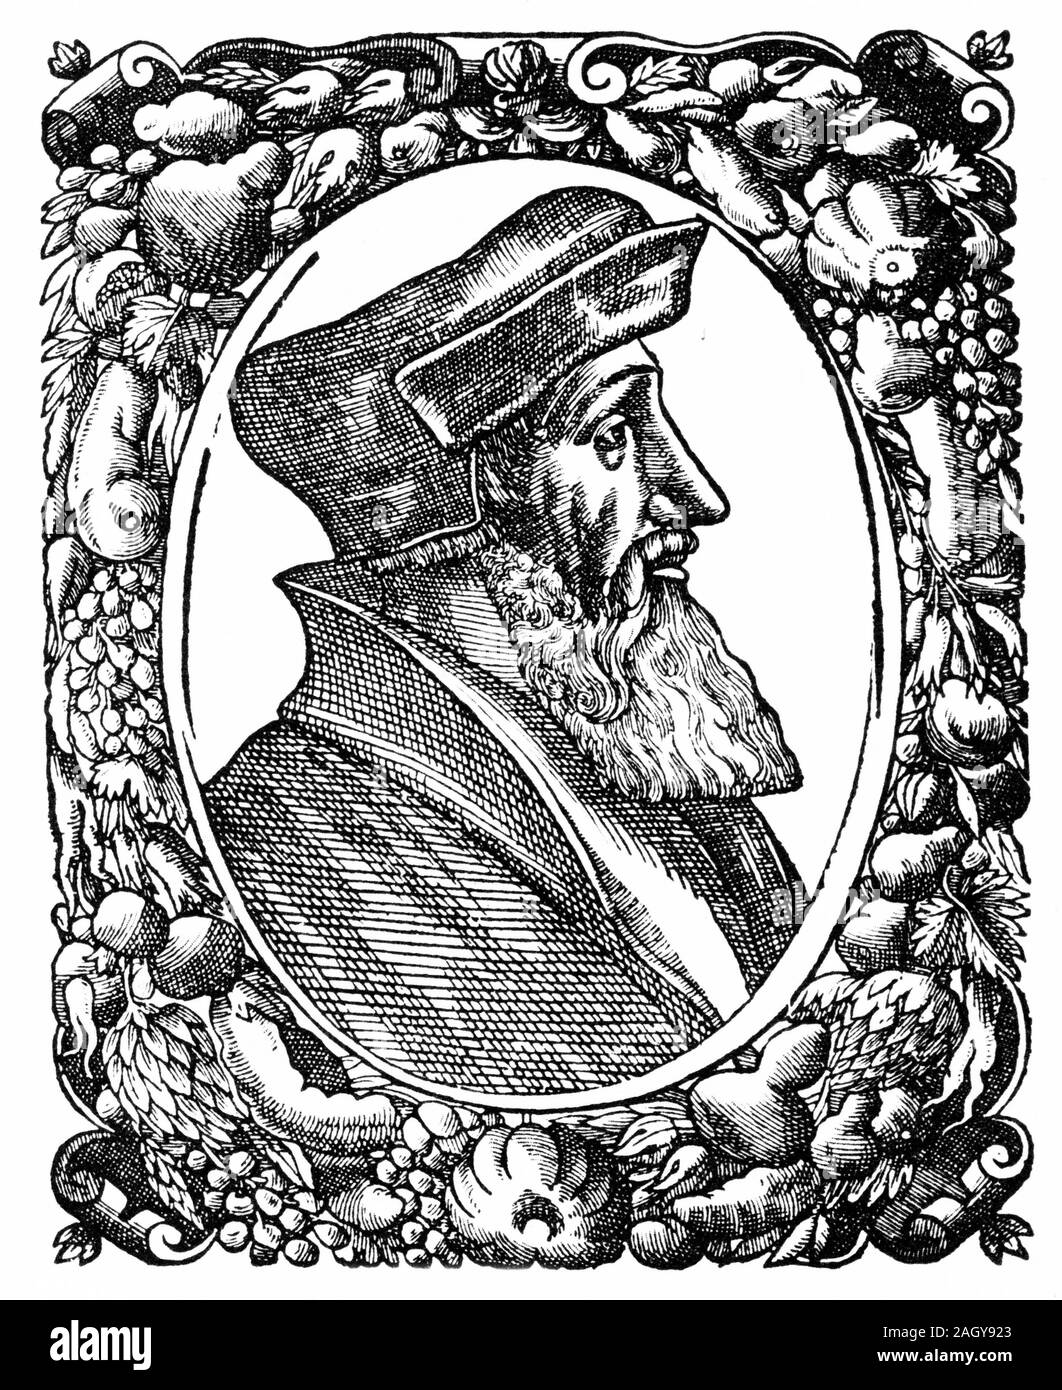 Gravur von Johannes Ökolampad (aka Oekolampadius, Oekolampad; 1482-1531), deutscher Reformator. Er war der Führer der protestantischen Fraktion im Baden Disputation von 1526 und war einer der Gründer der Evangelischen Theologie. Stockfoto